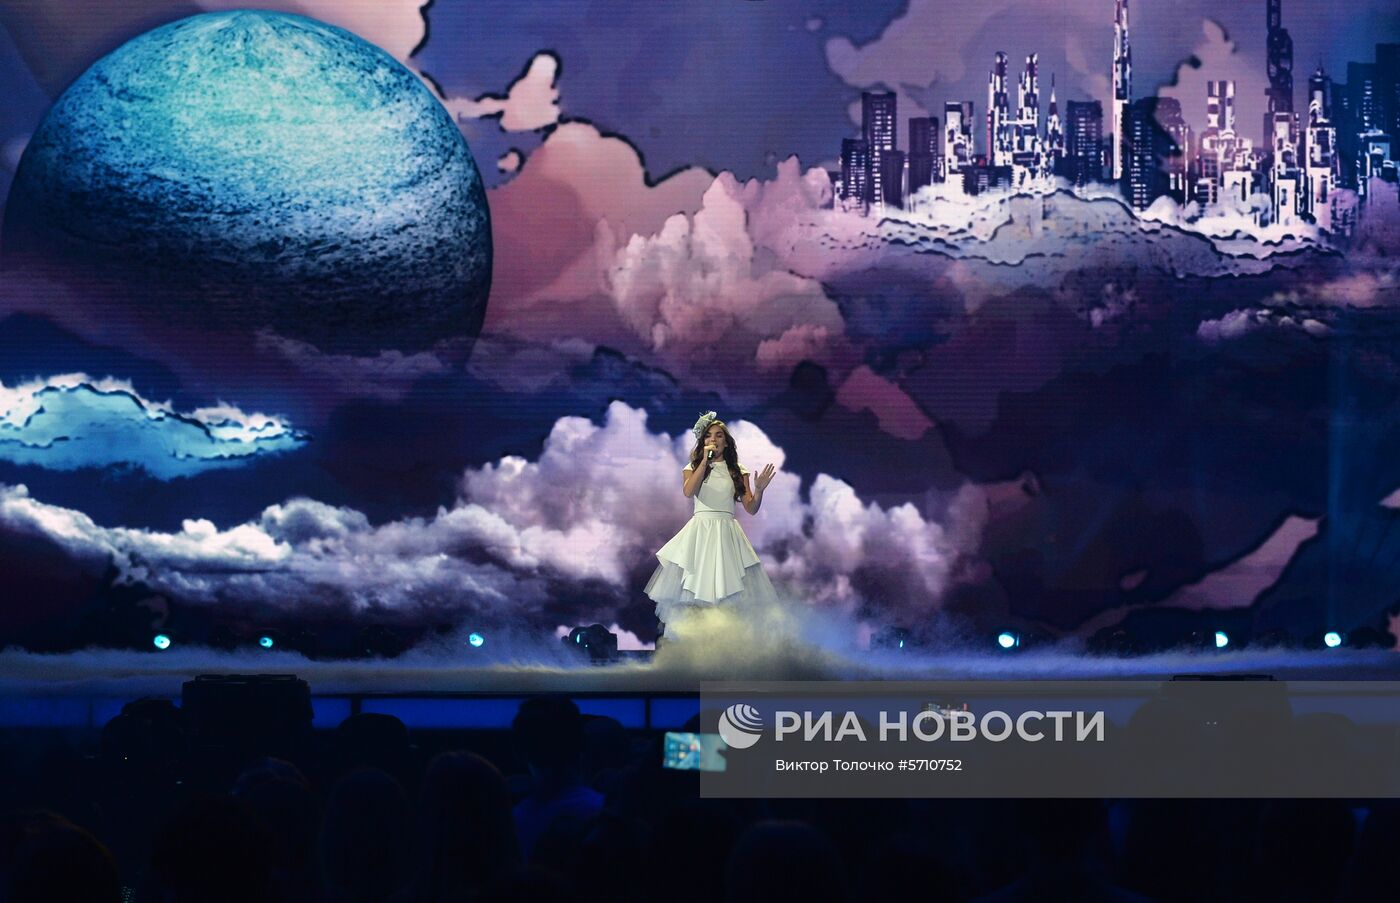 Генеральная репетиция детского конкурса песни "Евровидение-2018"